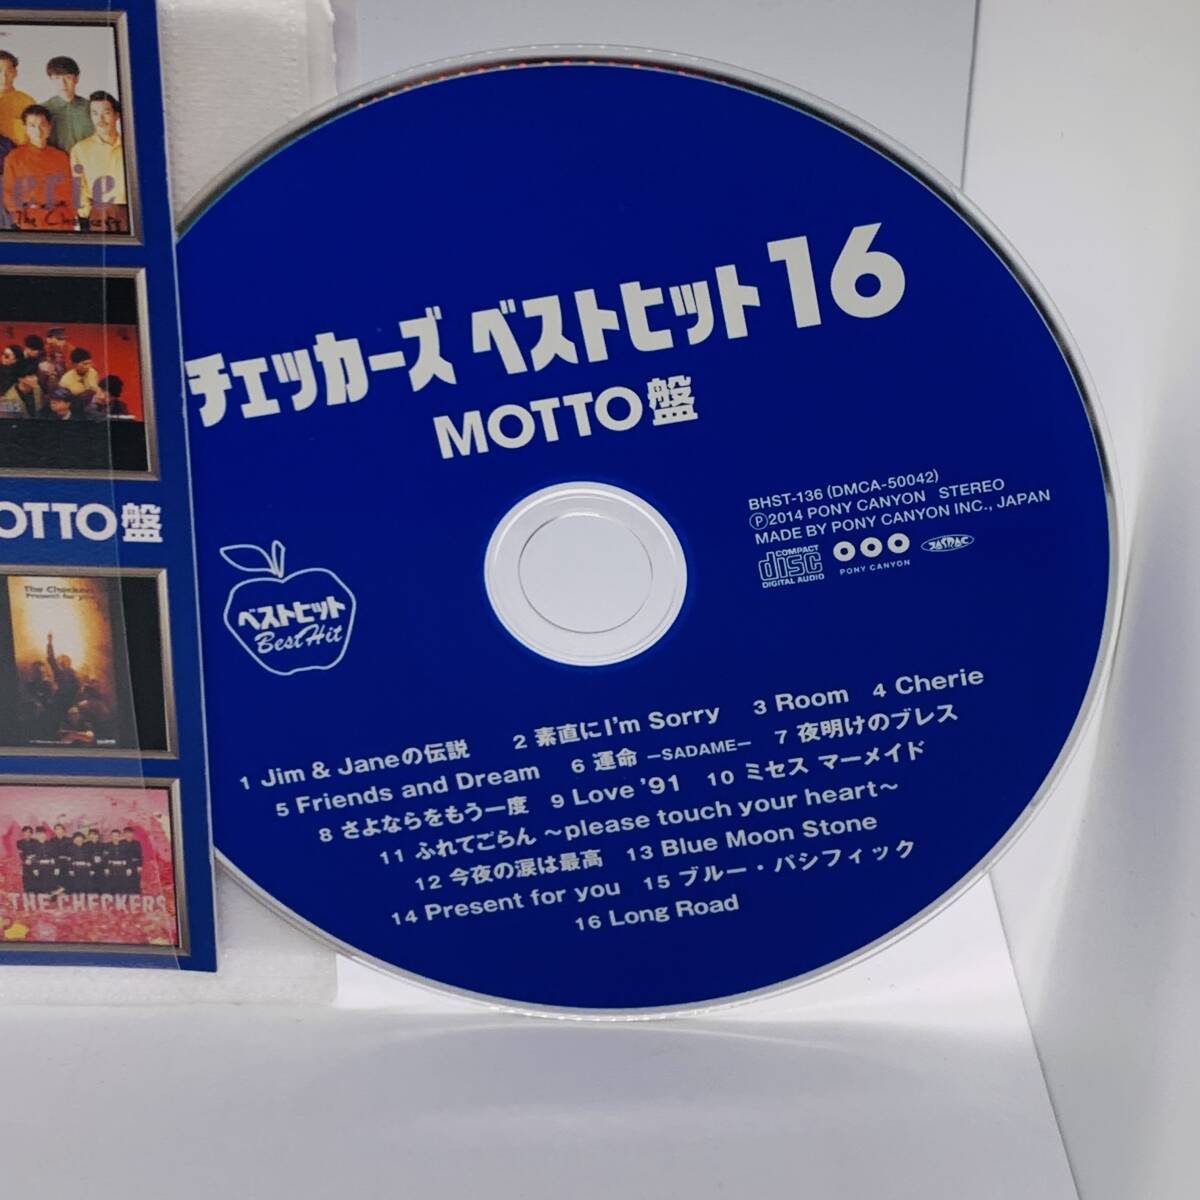 513 【CD】チェッカーズ ベストヒット16 MOTTO盤 ケースなし